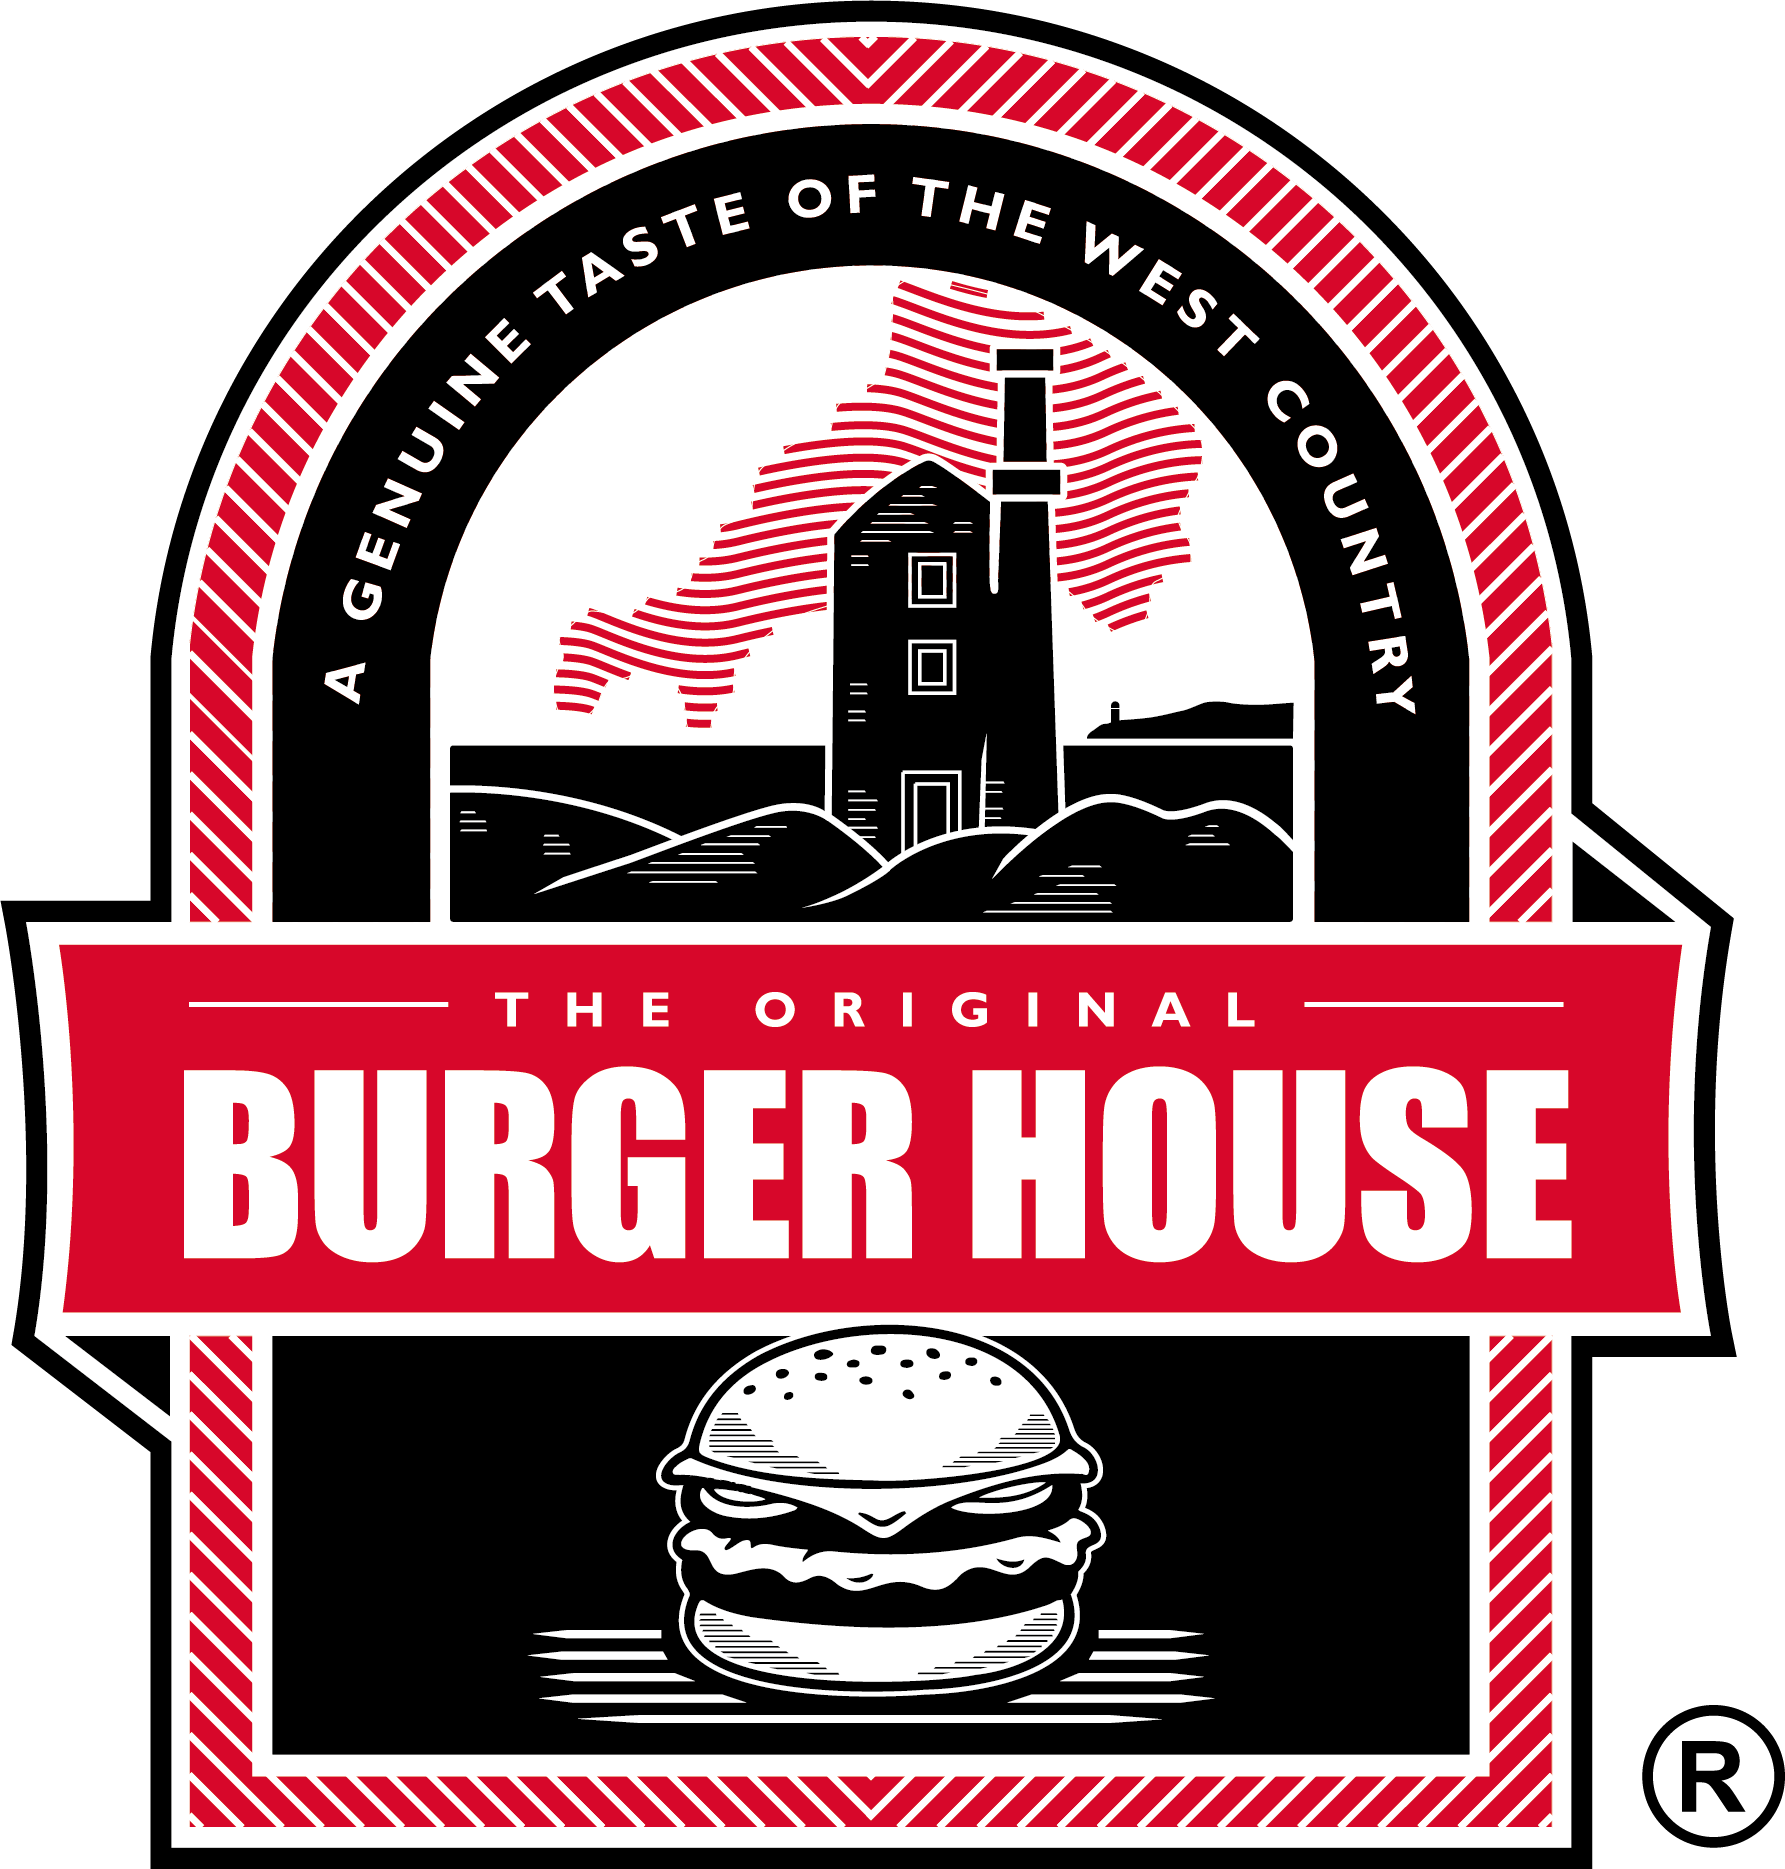 The Original Burger House